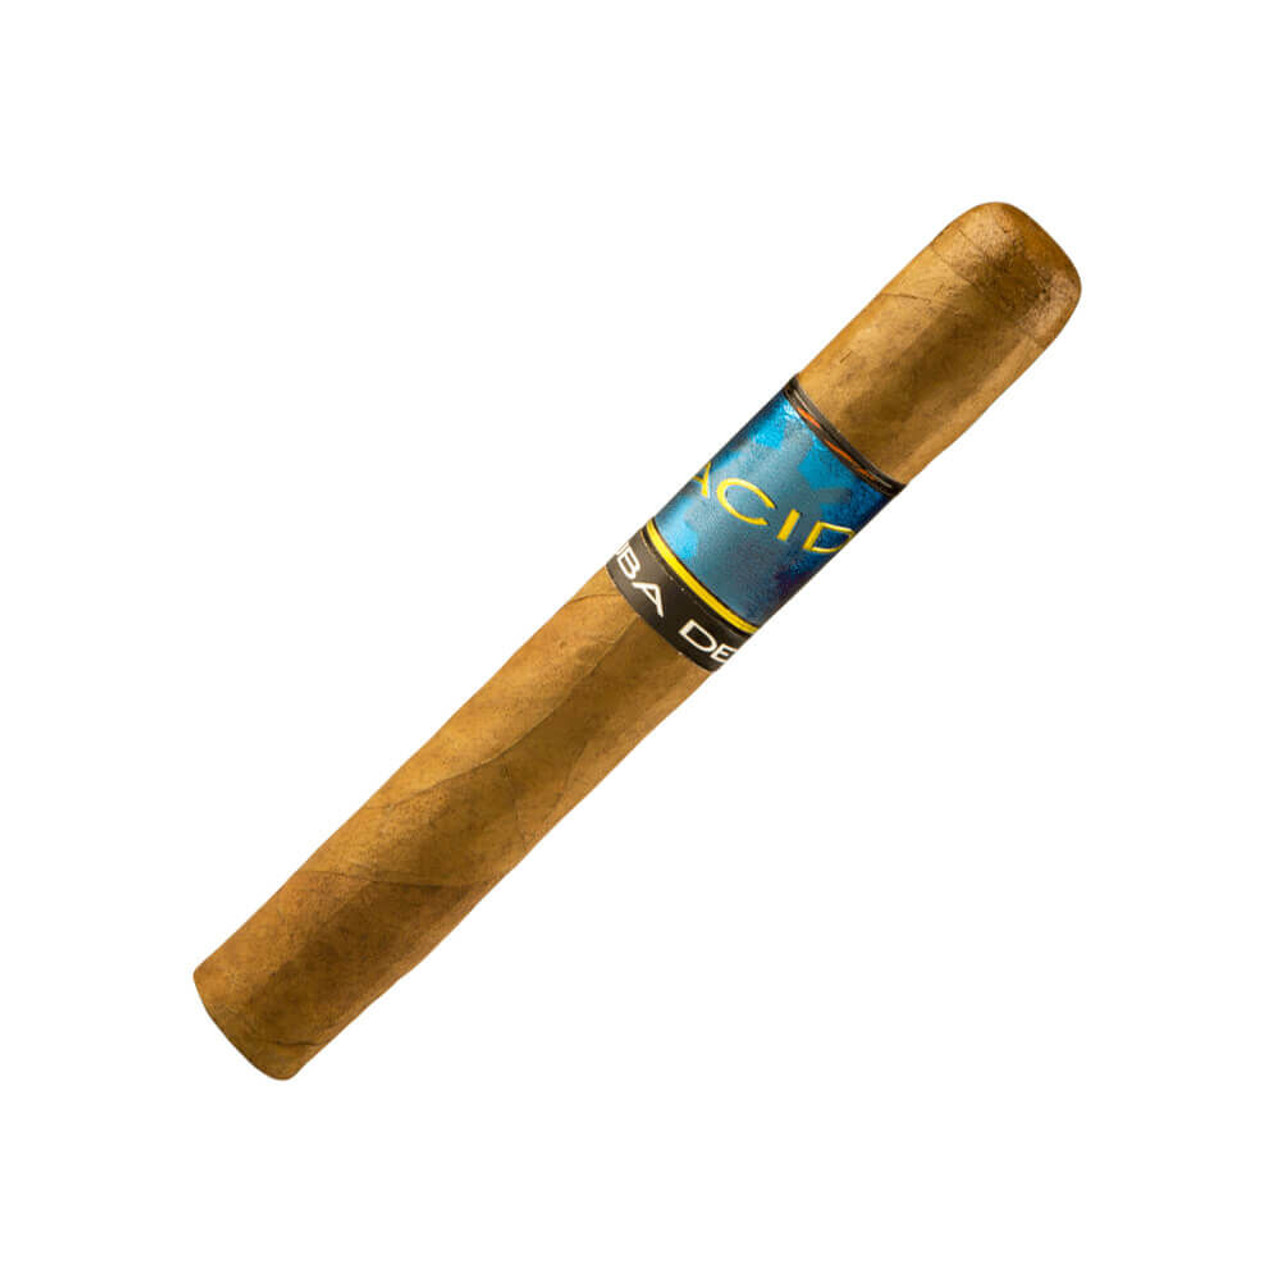 Acid Kuba Deluxe Tubo w/ Display Cigars - 6 x 50 (Box of 25)